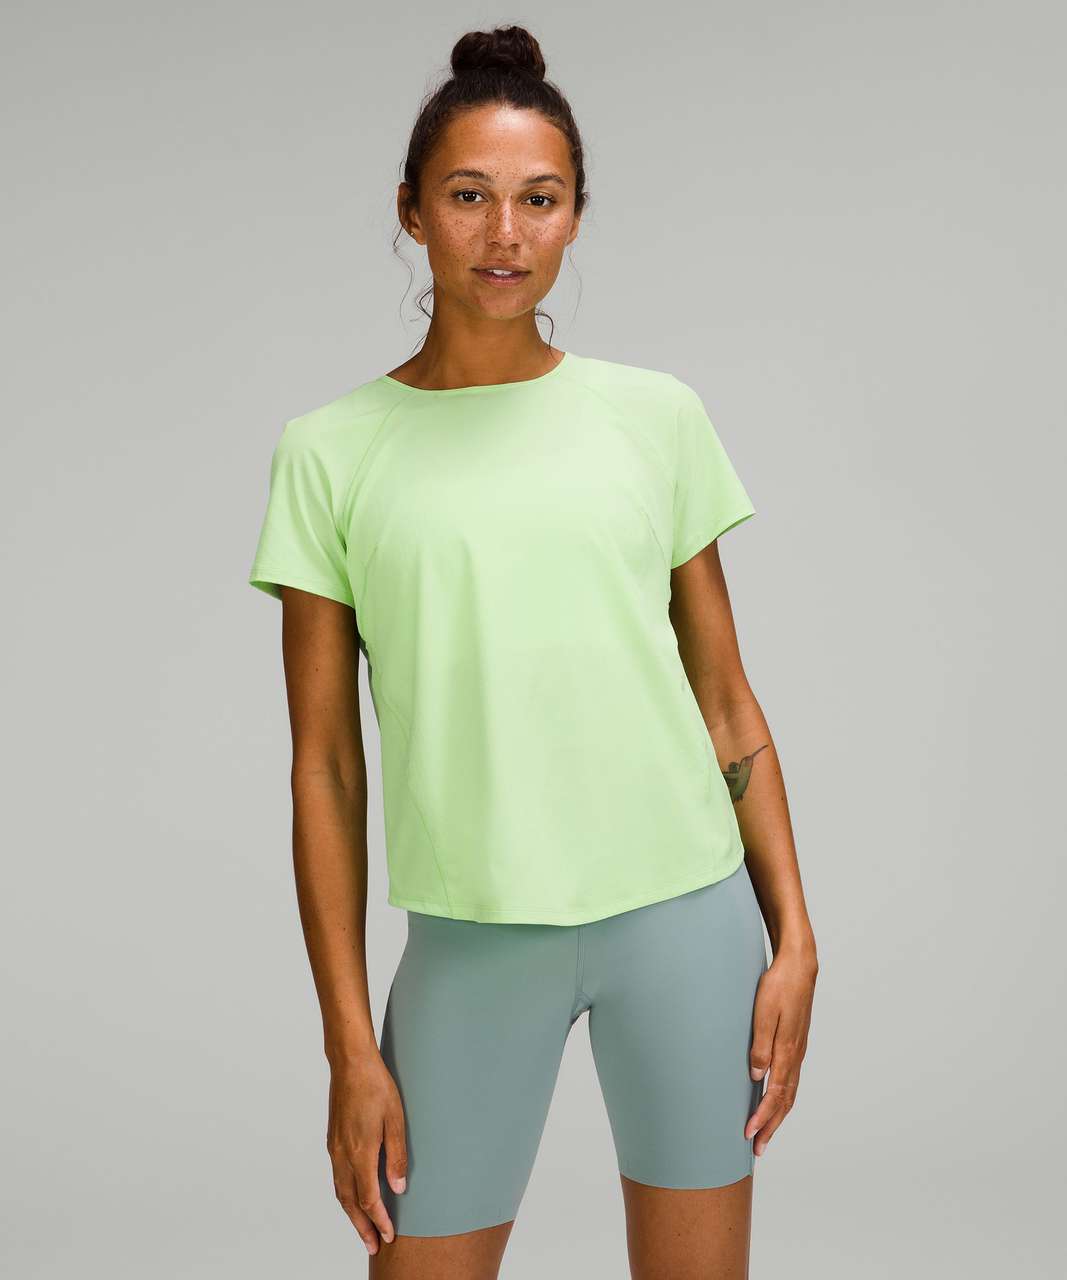 Lululemon Lightweight Stretch Running Short Sleeve Shirt - Scream Green Light